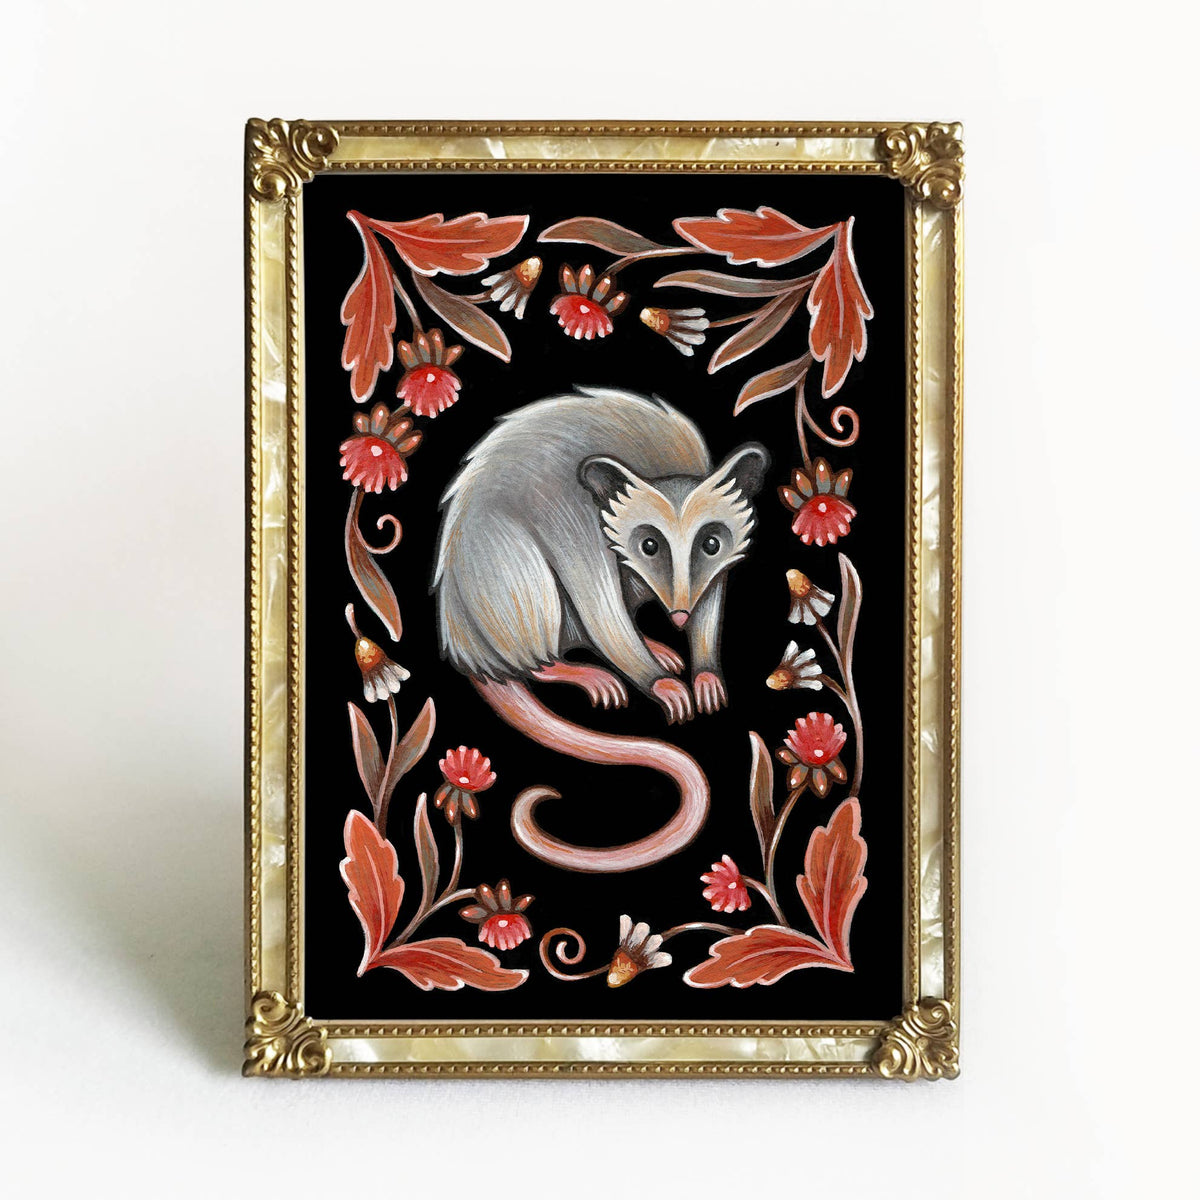 Faina Lorah Possum Art Print Folk Decor: 5x7